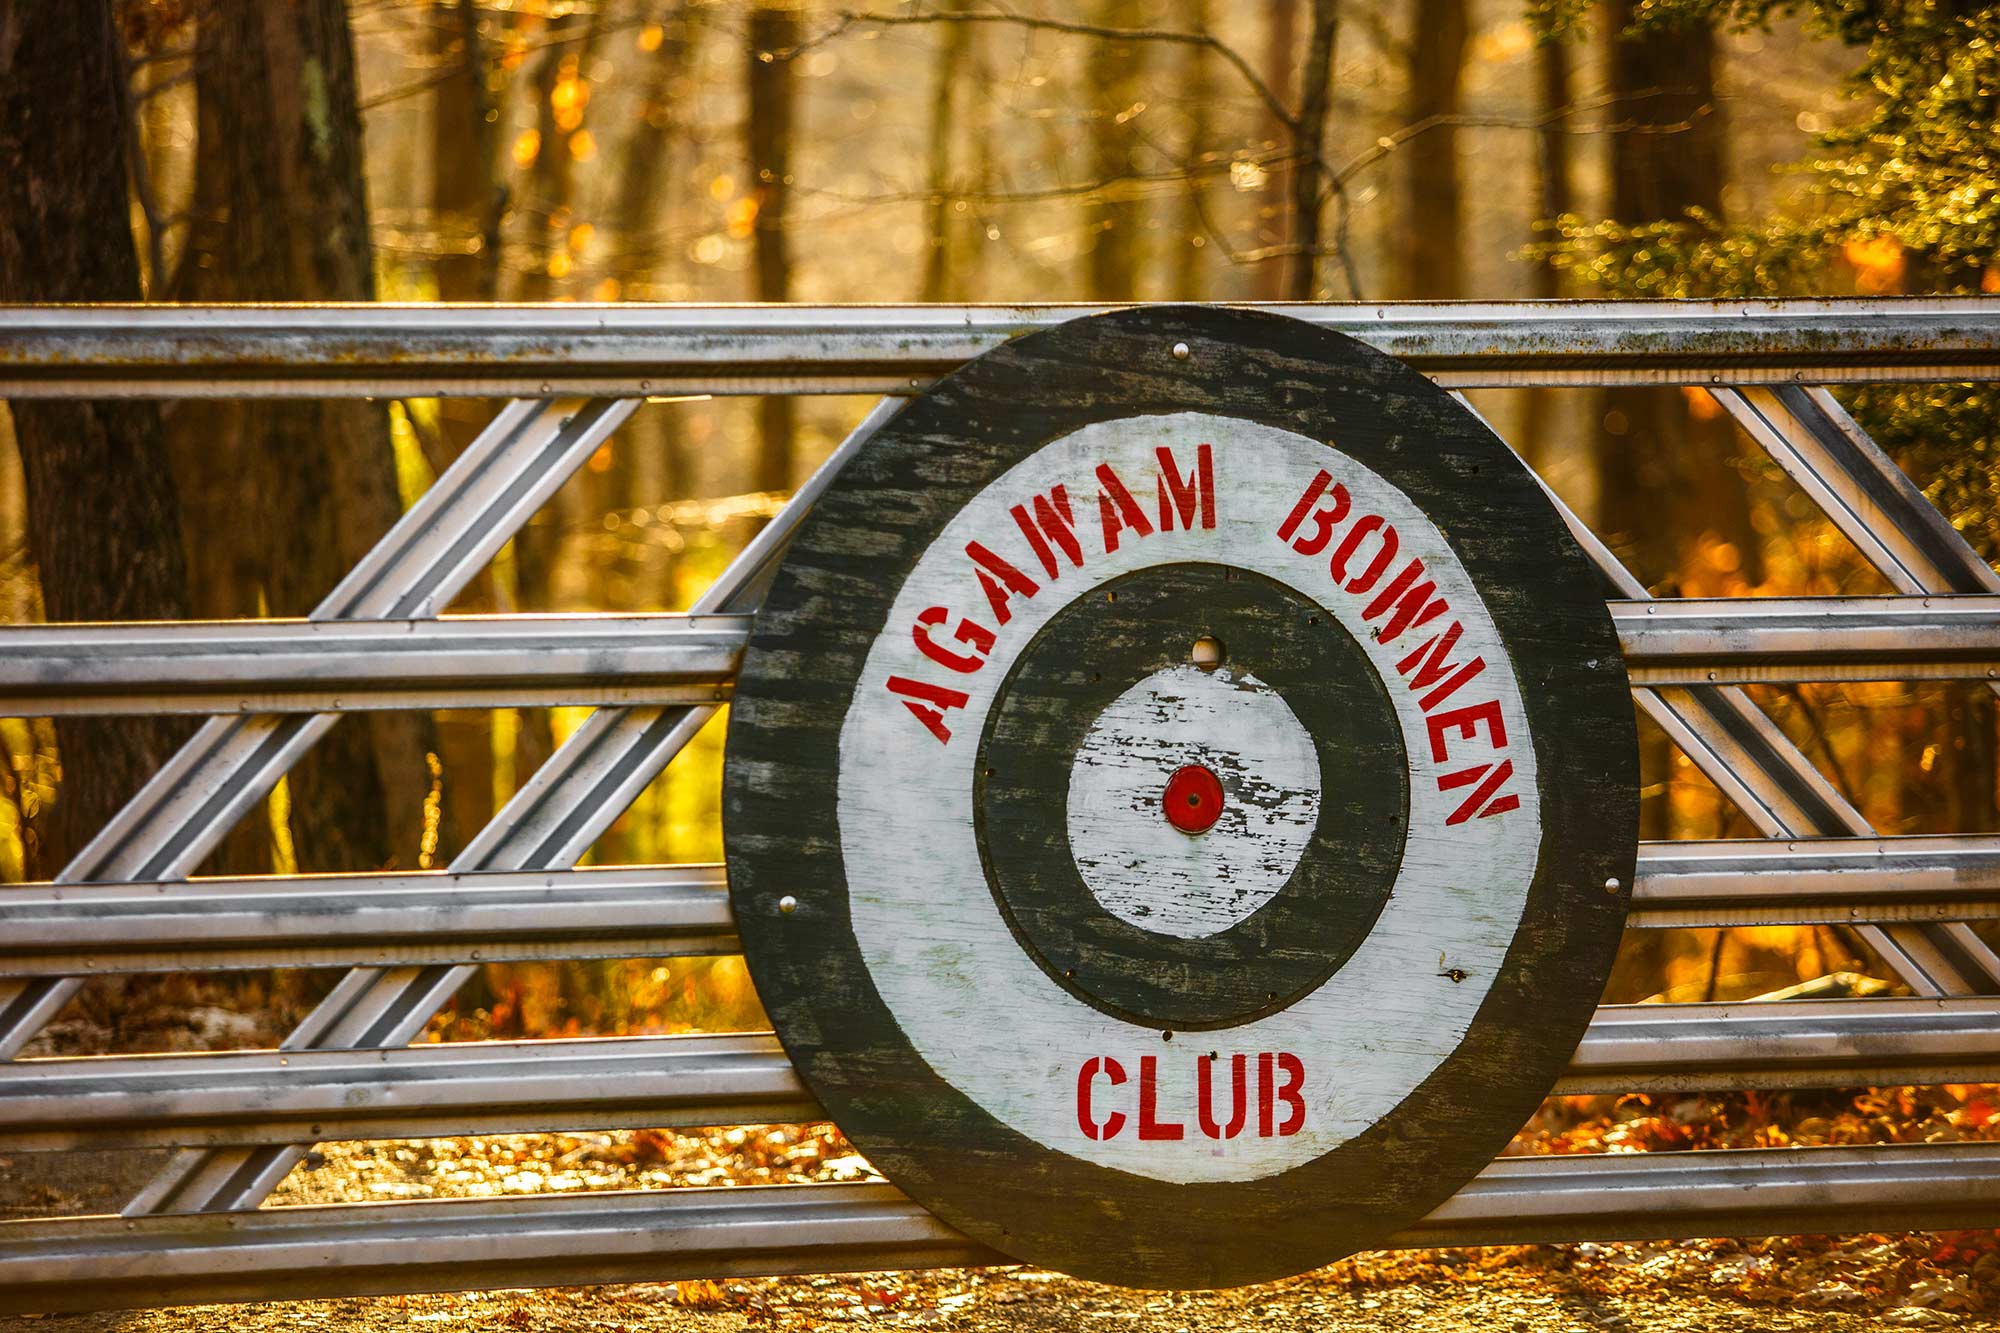 Agawam Bowmen Club, Agawam, MA - 11/17